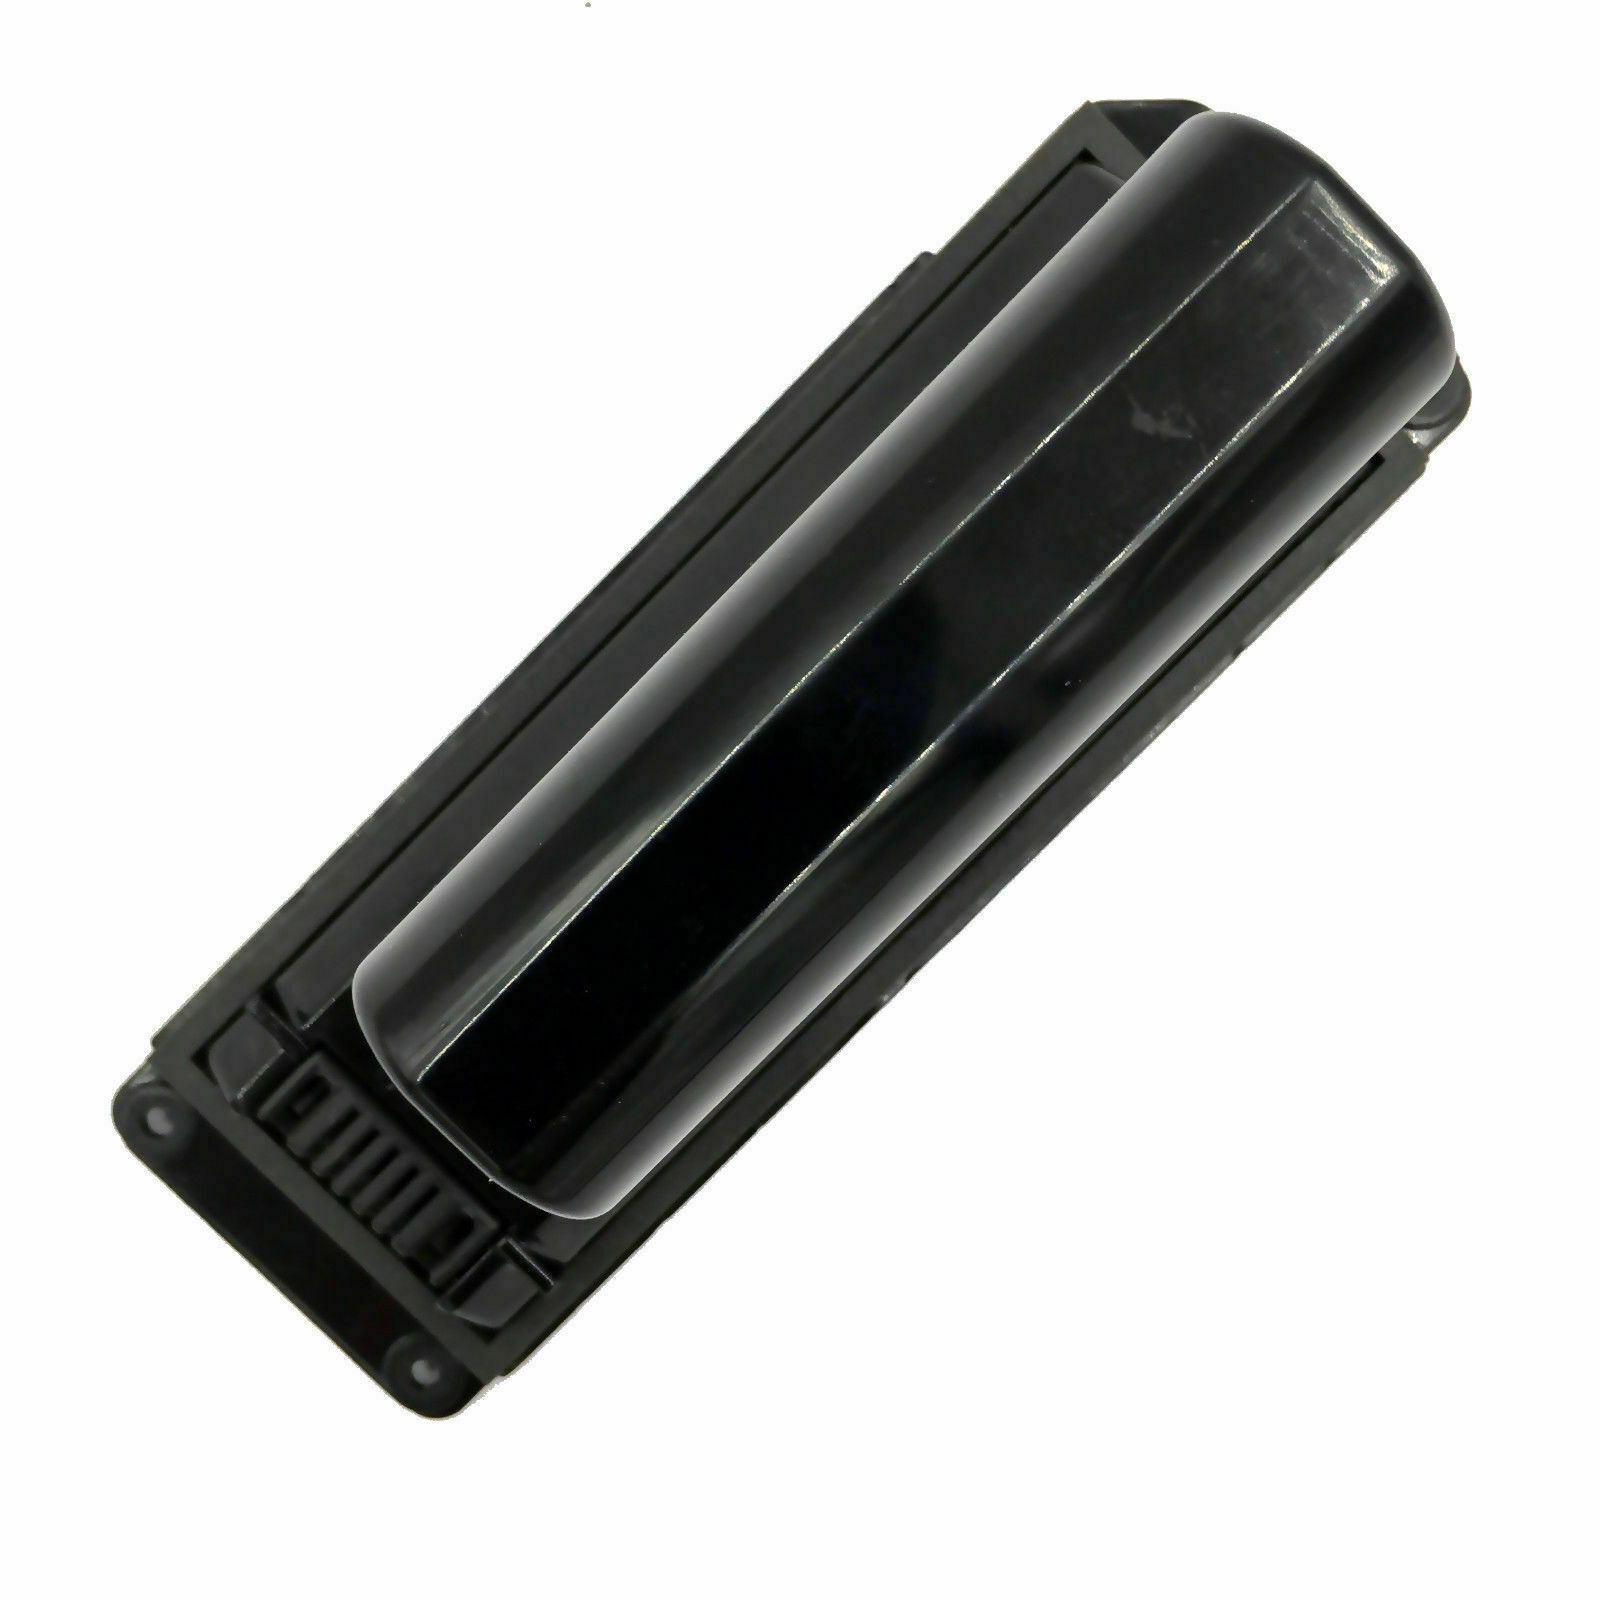 Bose Soundlink Mini 06340 7.4V kompatybilny bateria - Kliknij obrazek, aby zamkn±æ